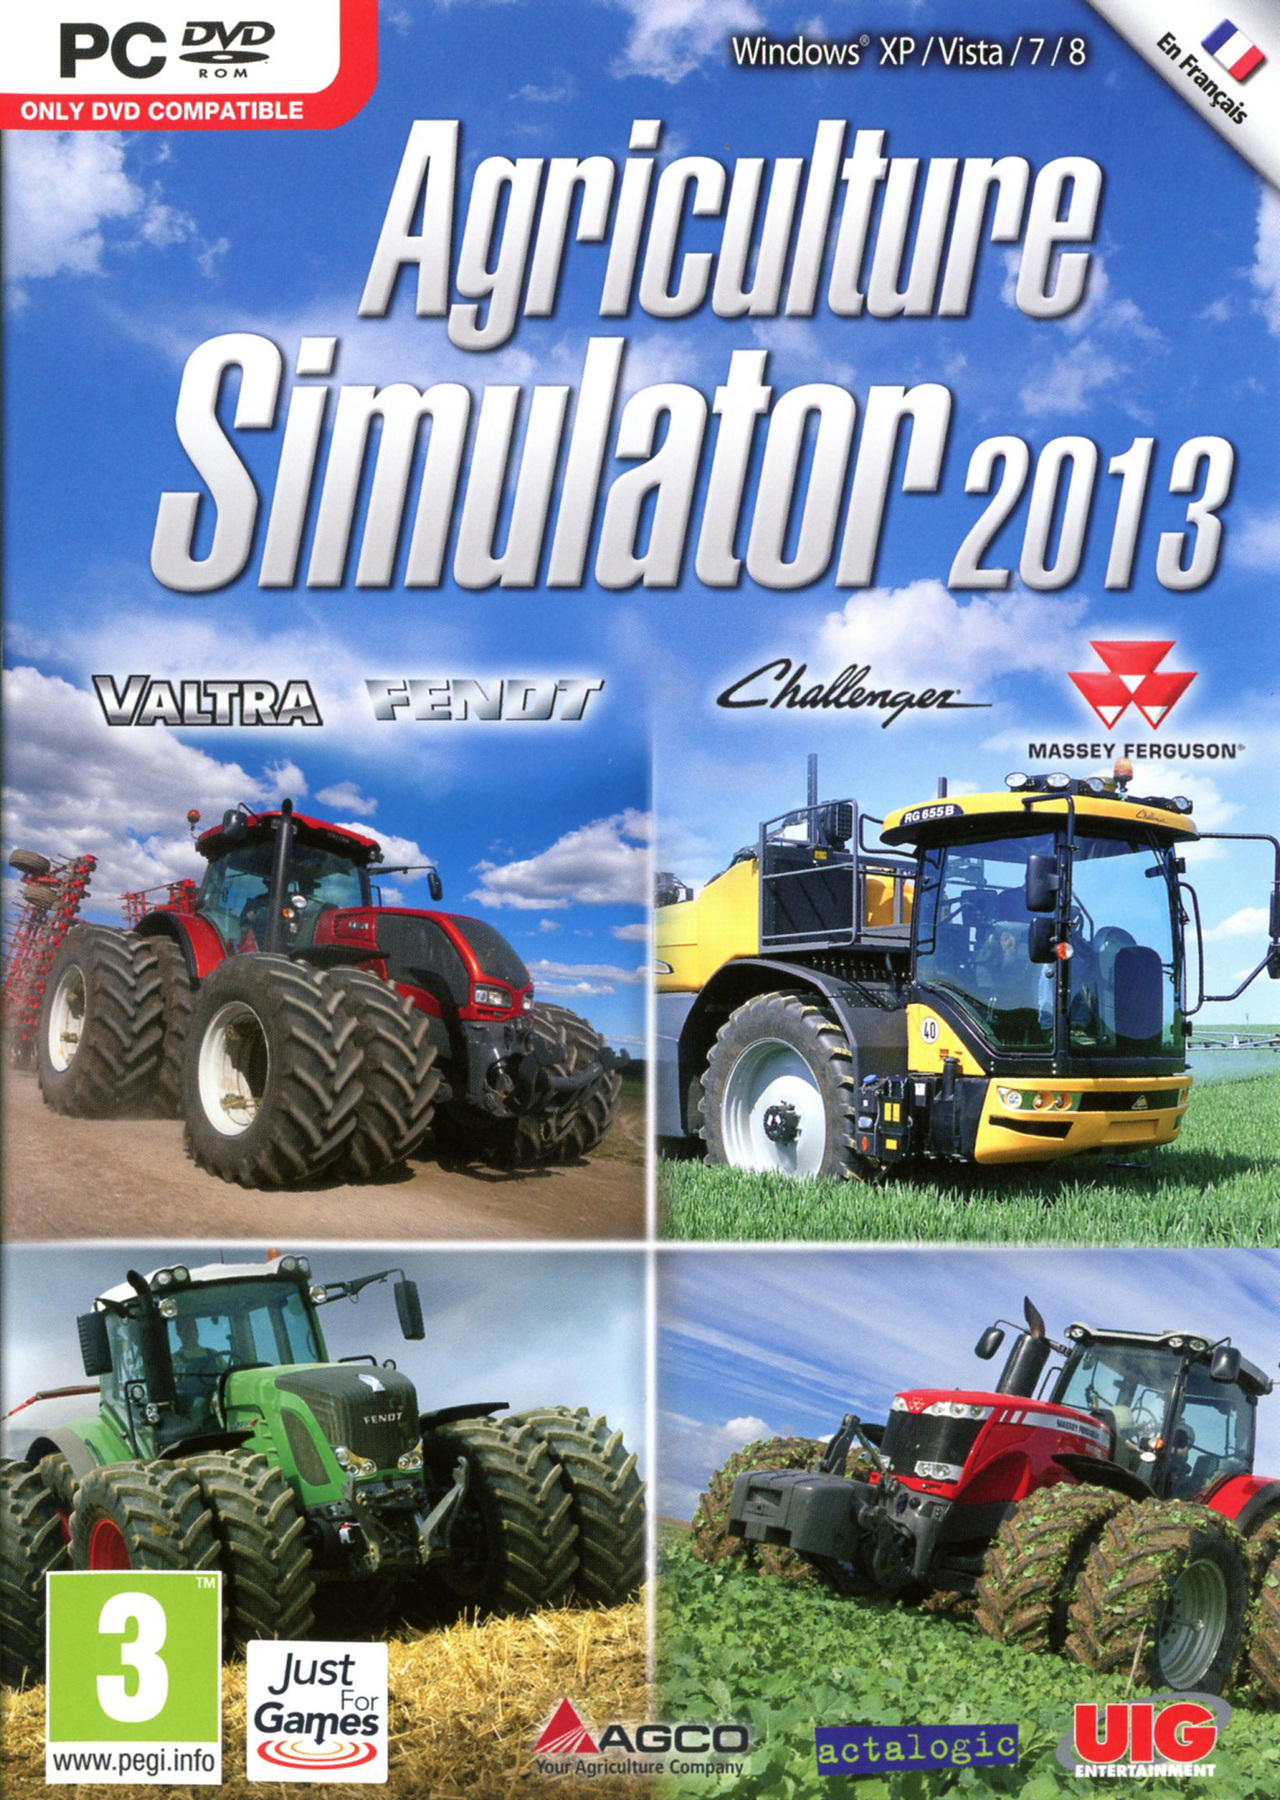 http://image.jeuxvideo.com/images/jaquettes/00045771/jaquette-agriculture-simulator-2013-pc-cover-avant-g-1354110202.jpg